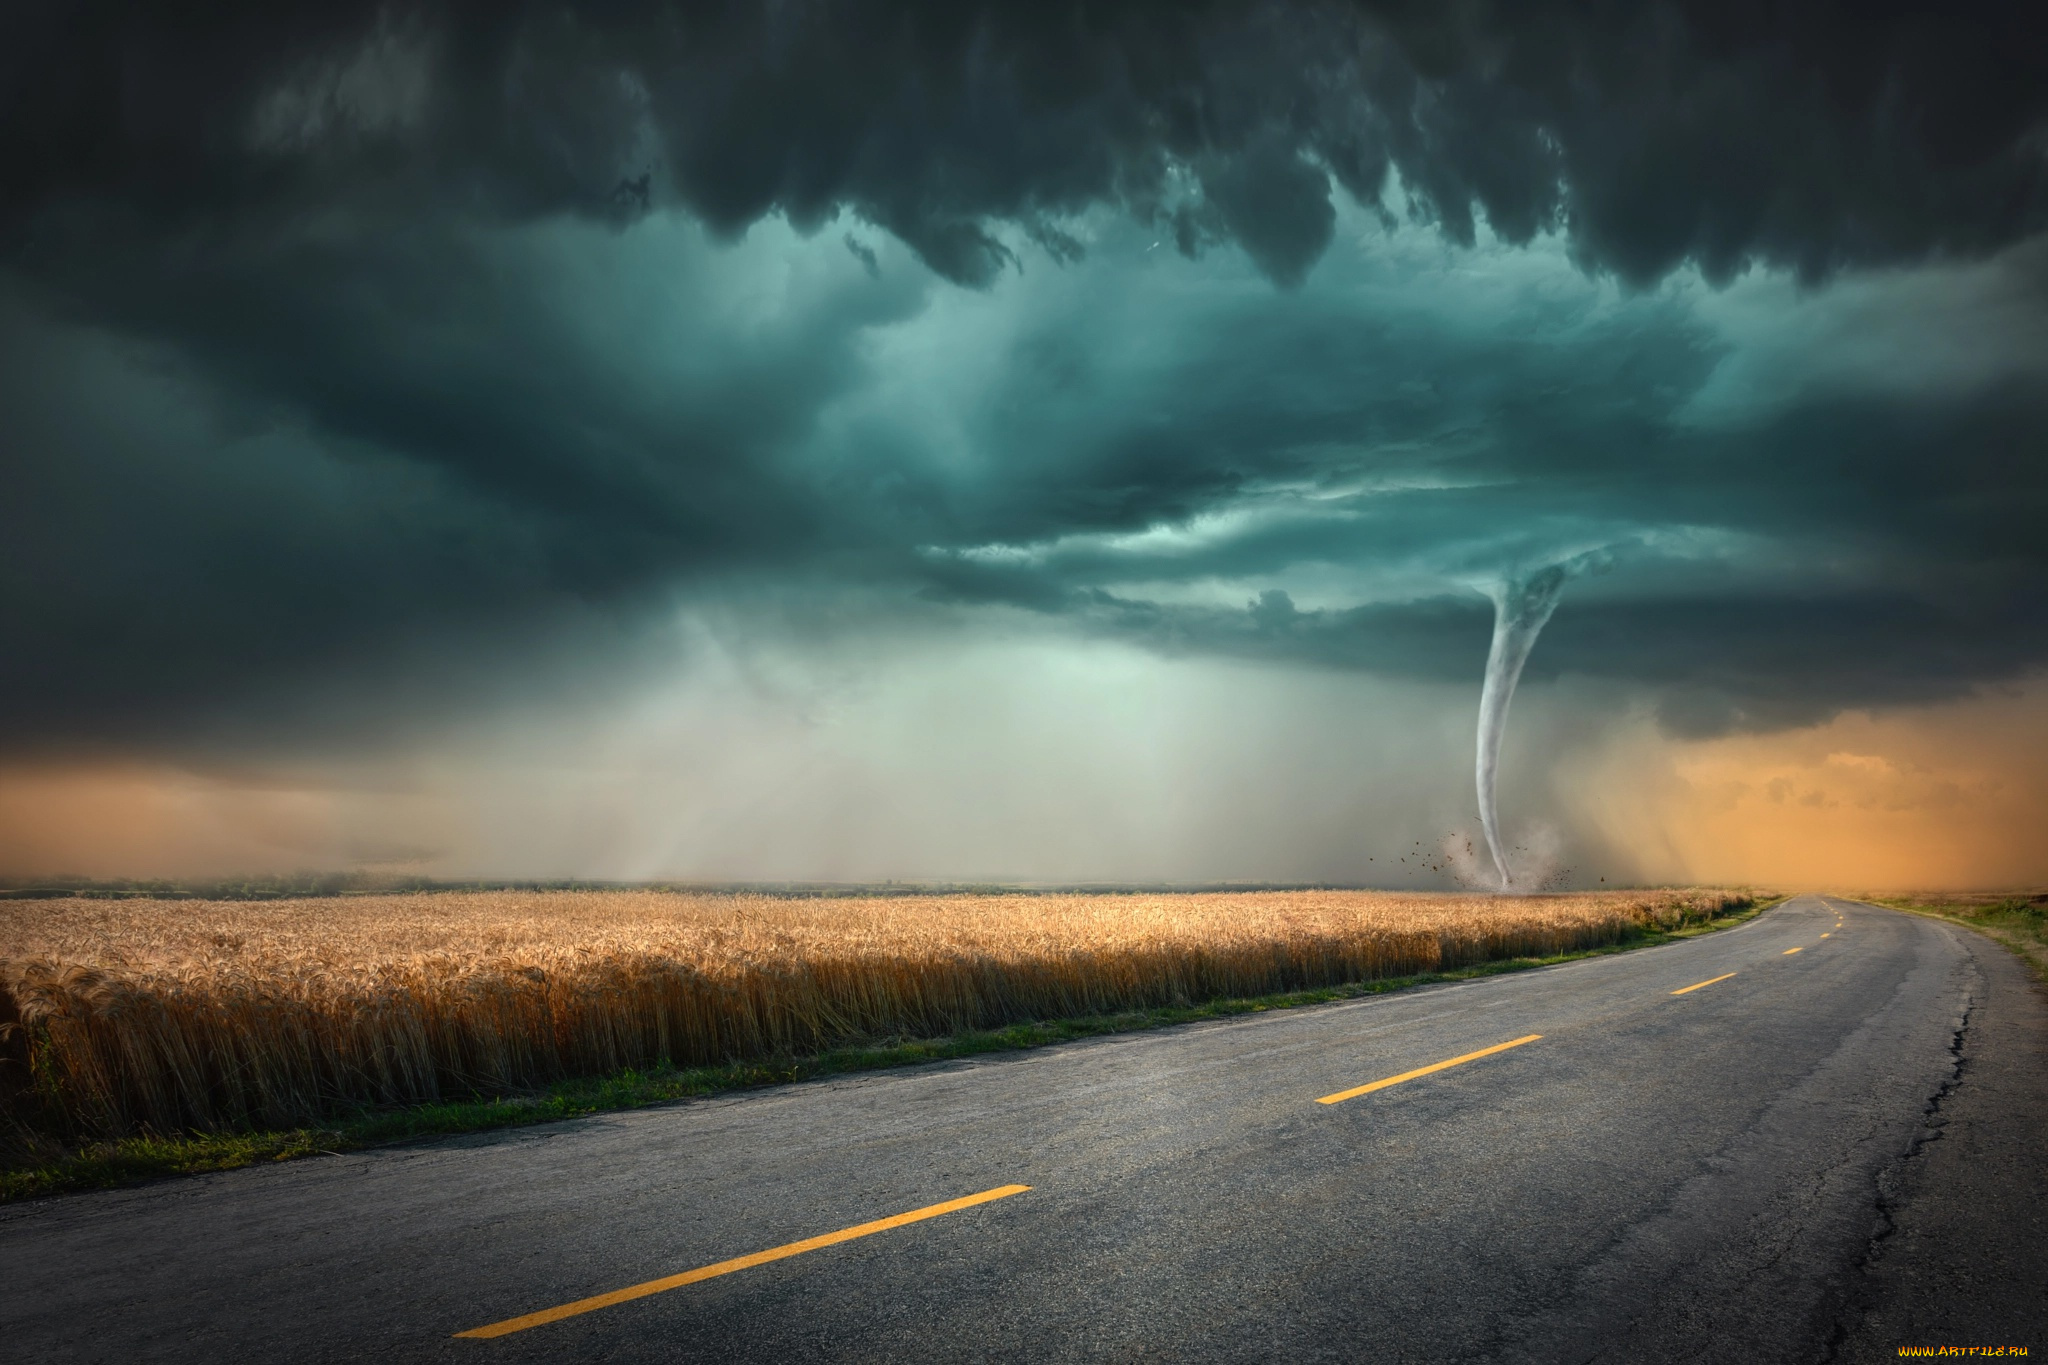 природа, стихия, торнадо, смерч, буря, небо, горизонт, ветер, ураган, бедствие, облака, непогода, дождь, ливень, чёрные